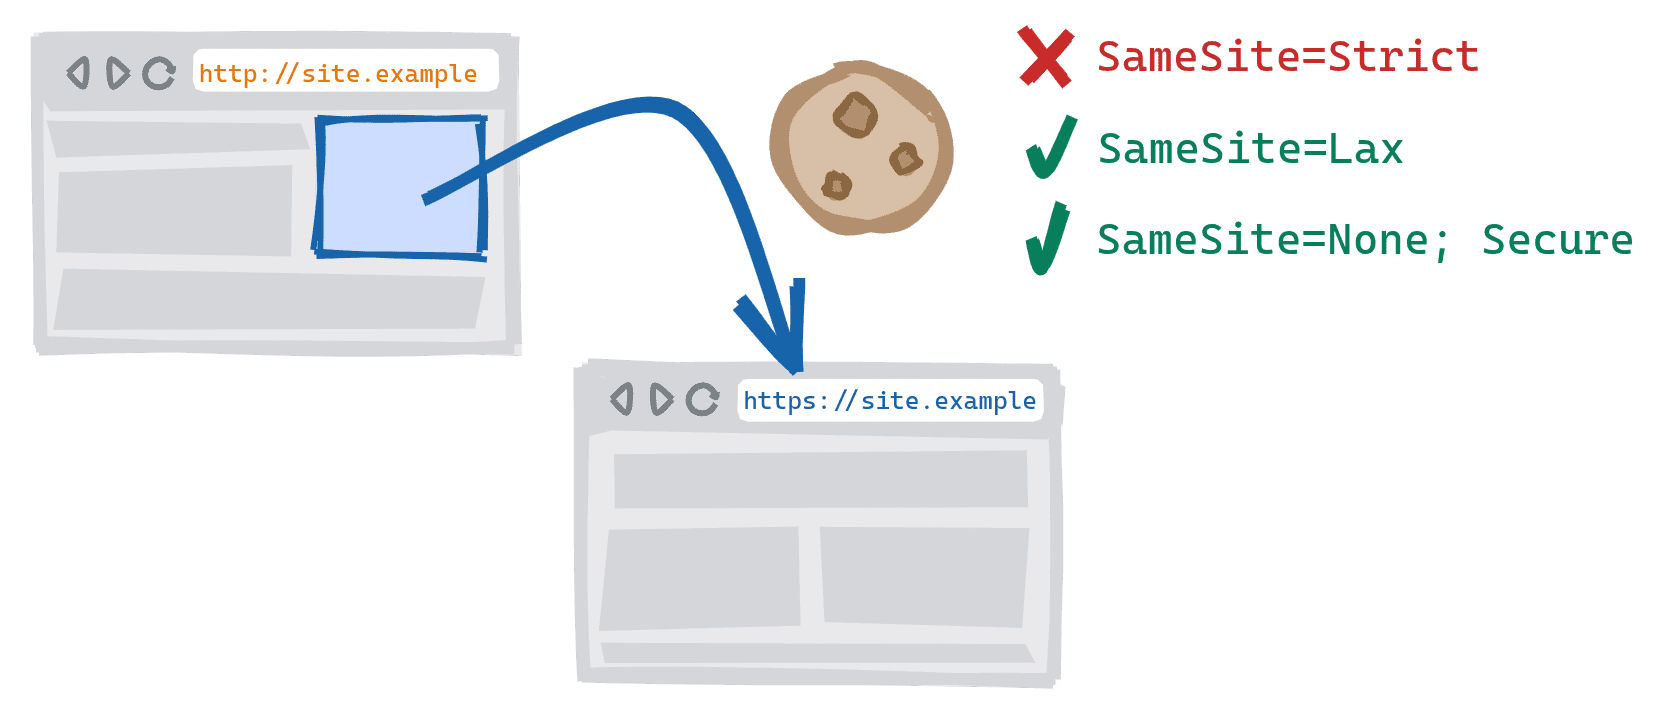 Una navegación entre esquemas que se activa al seguir un vínculo en la versión HTTP no segura de un sitio a la versión HTTPS segura SameSite=Se bloquean las cookies estrictas, SameSite=Lax y SameSite=None; se permiten las cookies seguras.